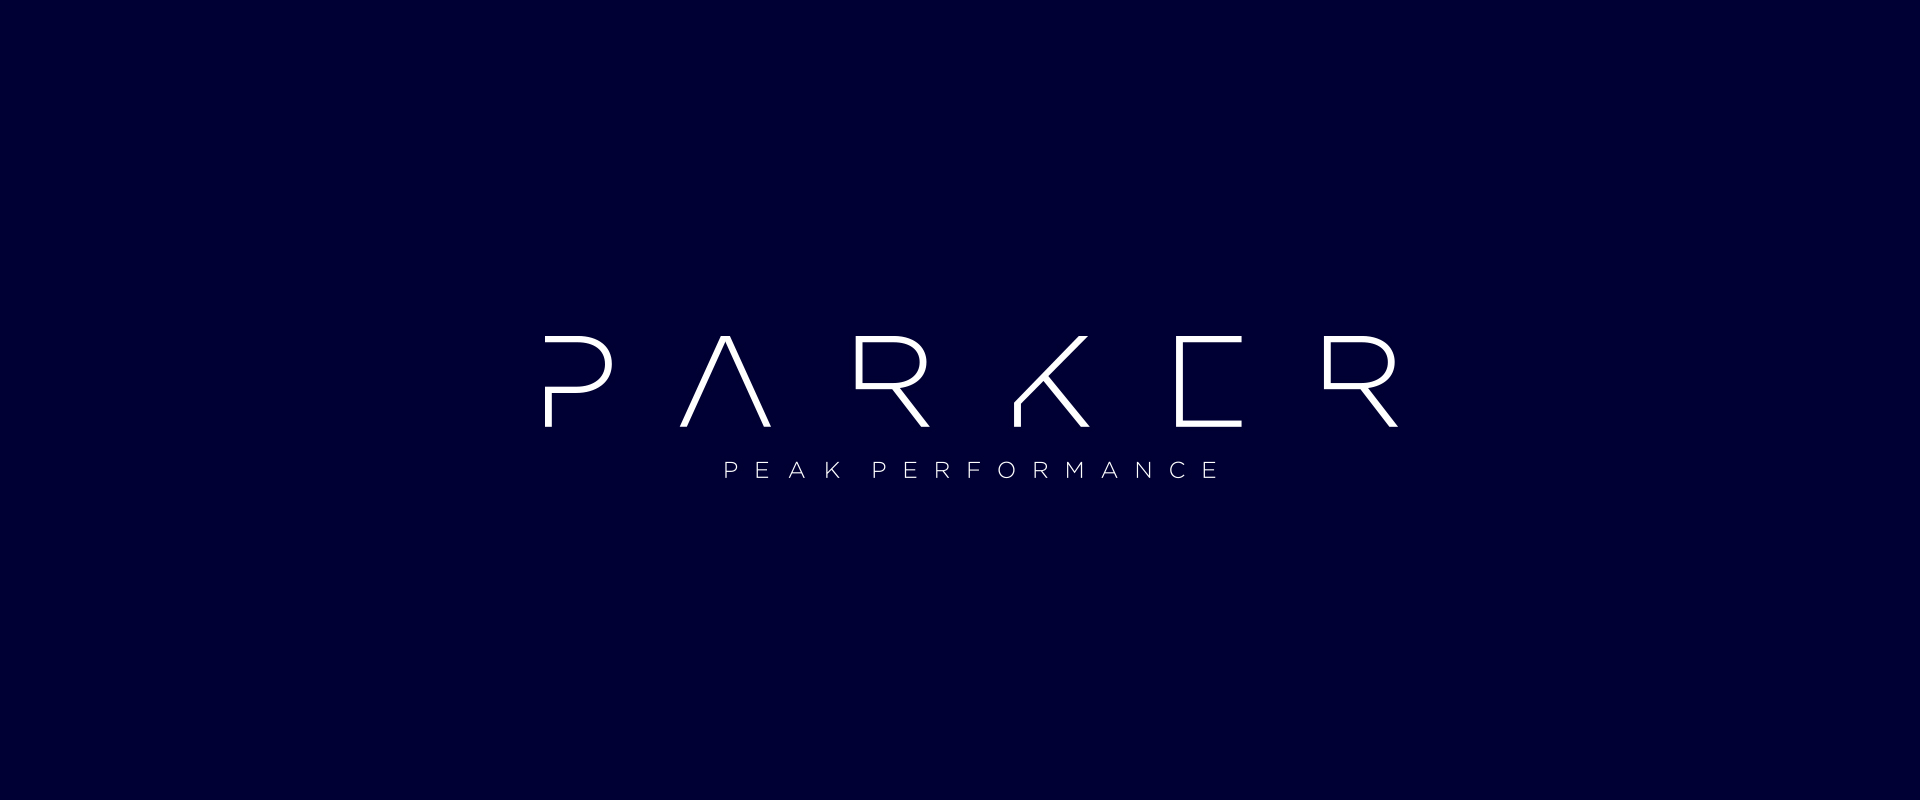 Parker-Logos-1